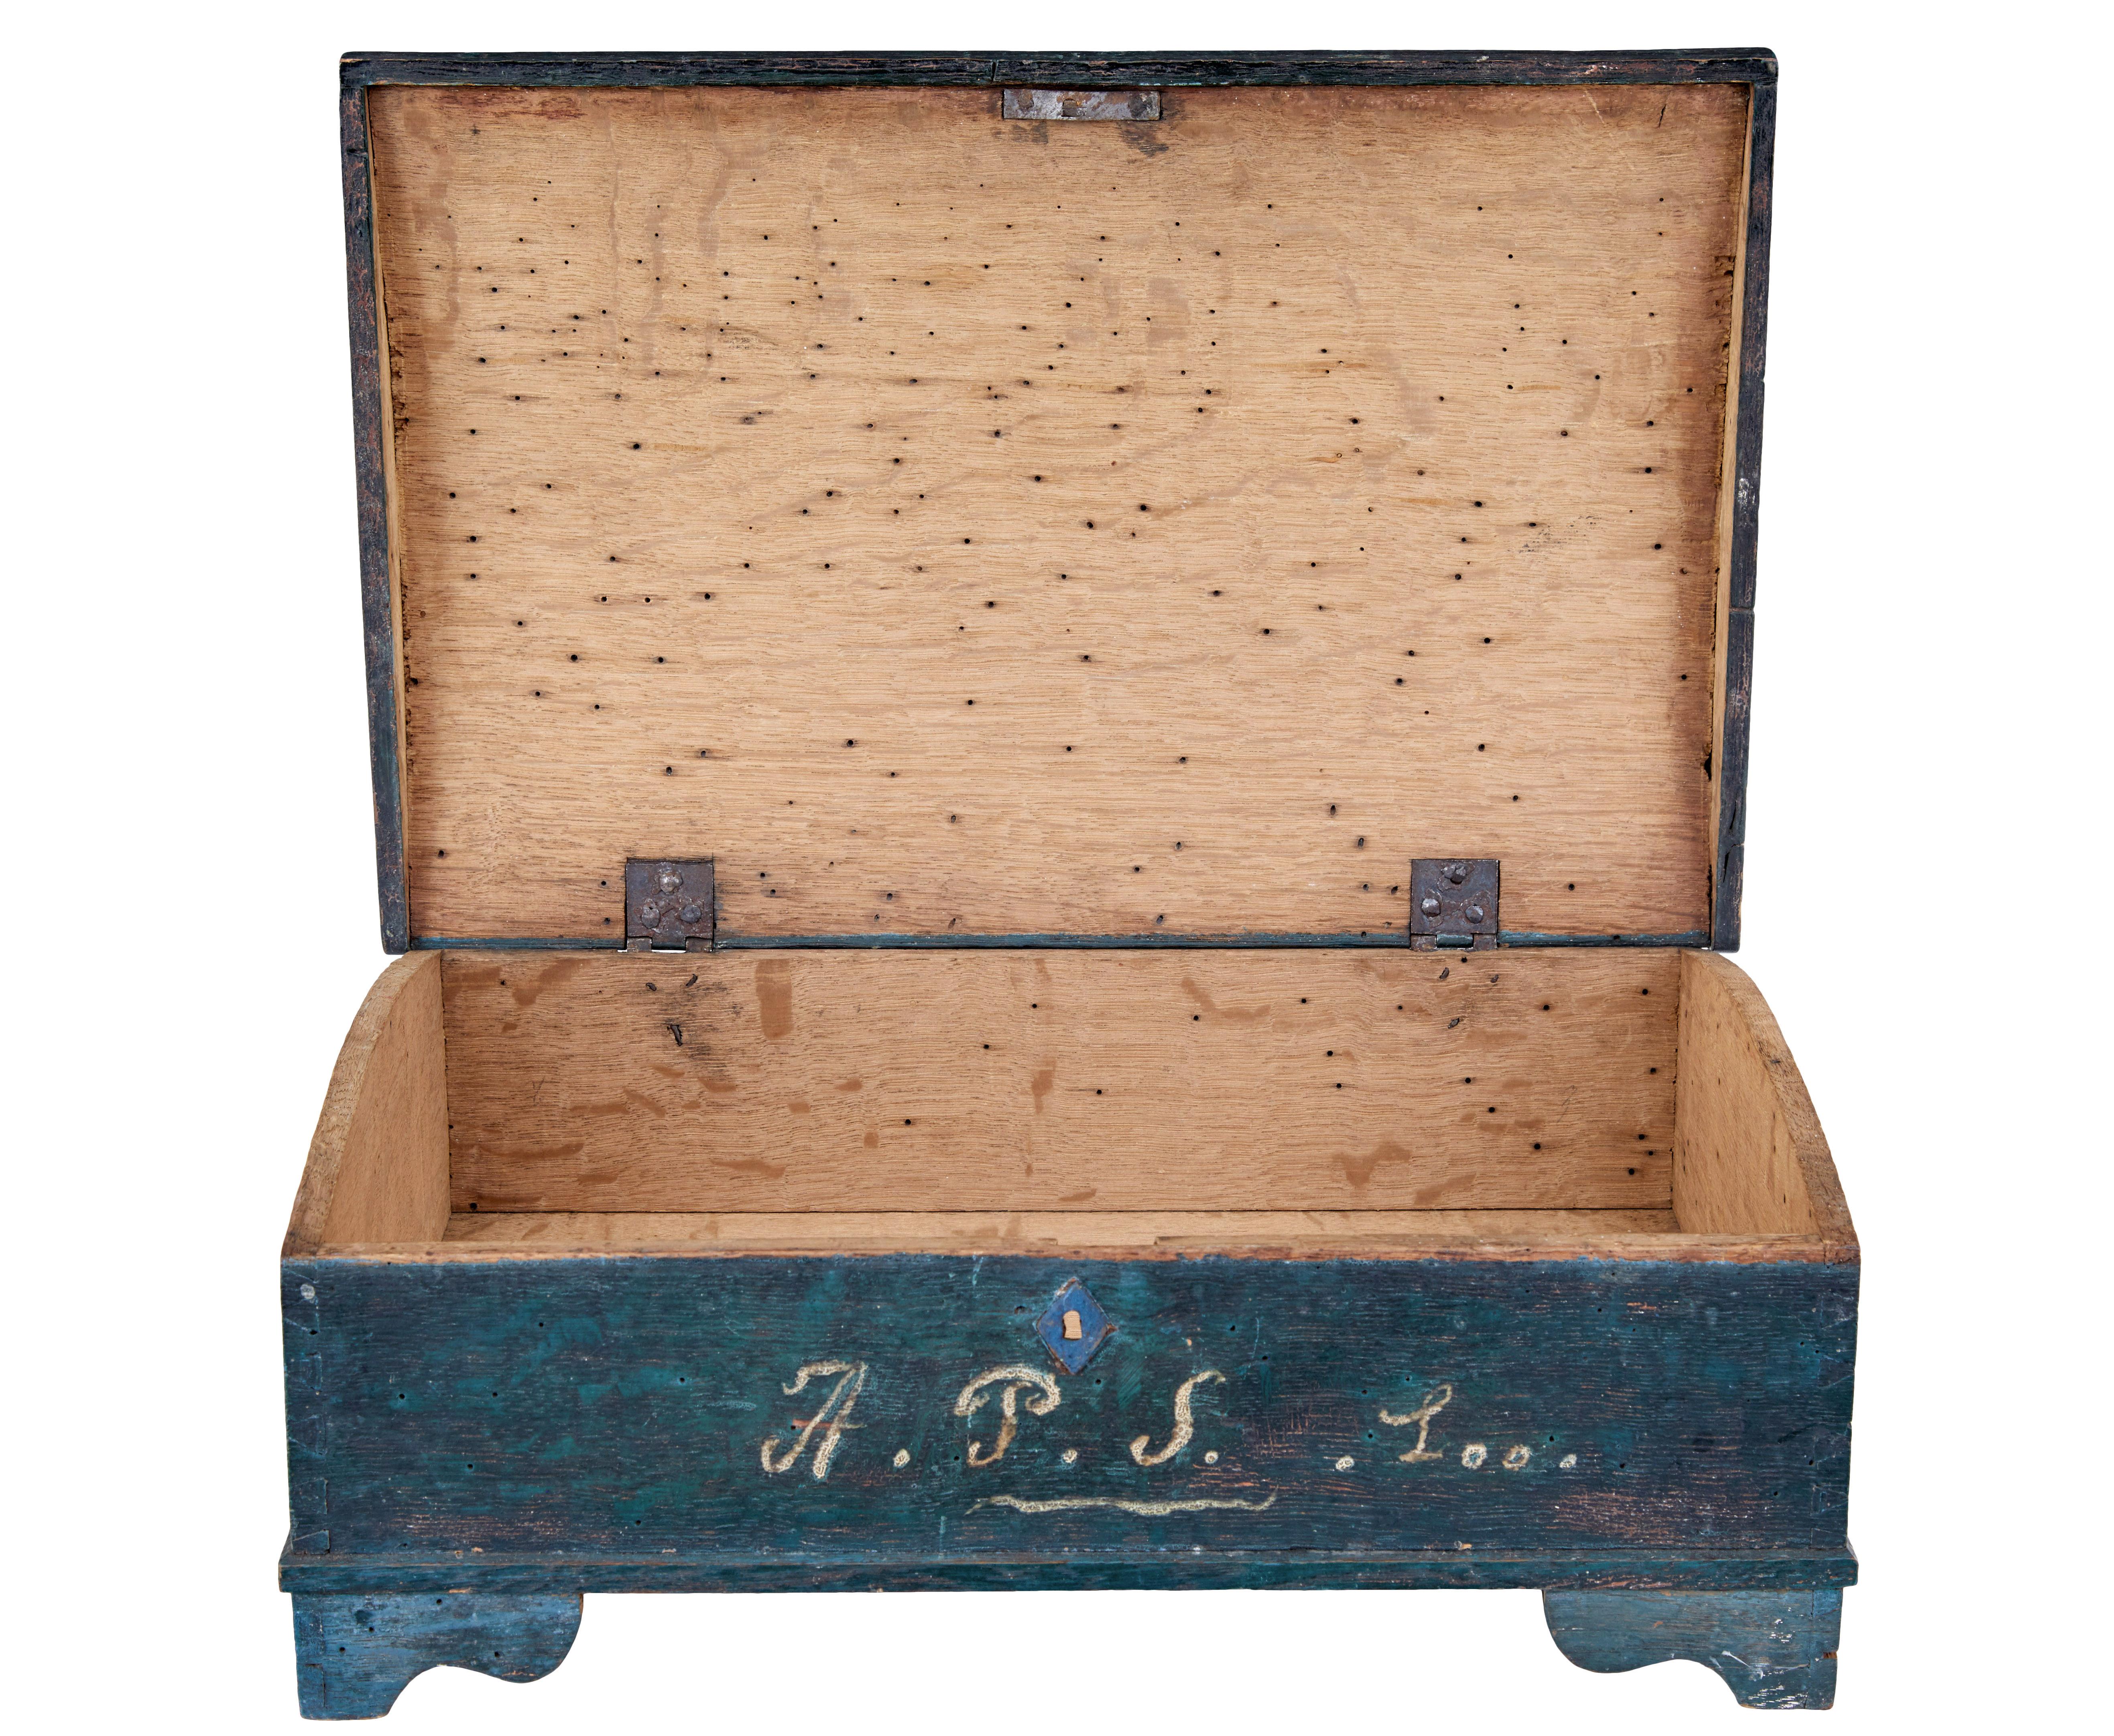 Bemalter schwedischer Tischkasten aus dem 19. Jahrhundert, um 1840.

Gute Qualität skandinavischen Box in Originalfarbe.  Handbemalt in einem blau/grünen Farbschema.  Außerdem mit einer roten Kartusche auf dem Deckel und den Initialen a.P.S. auf der